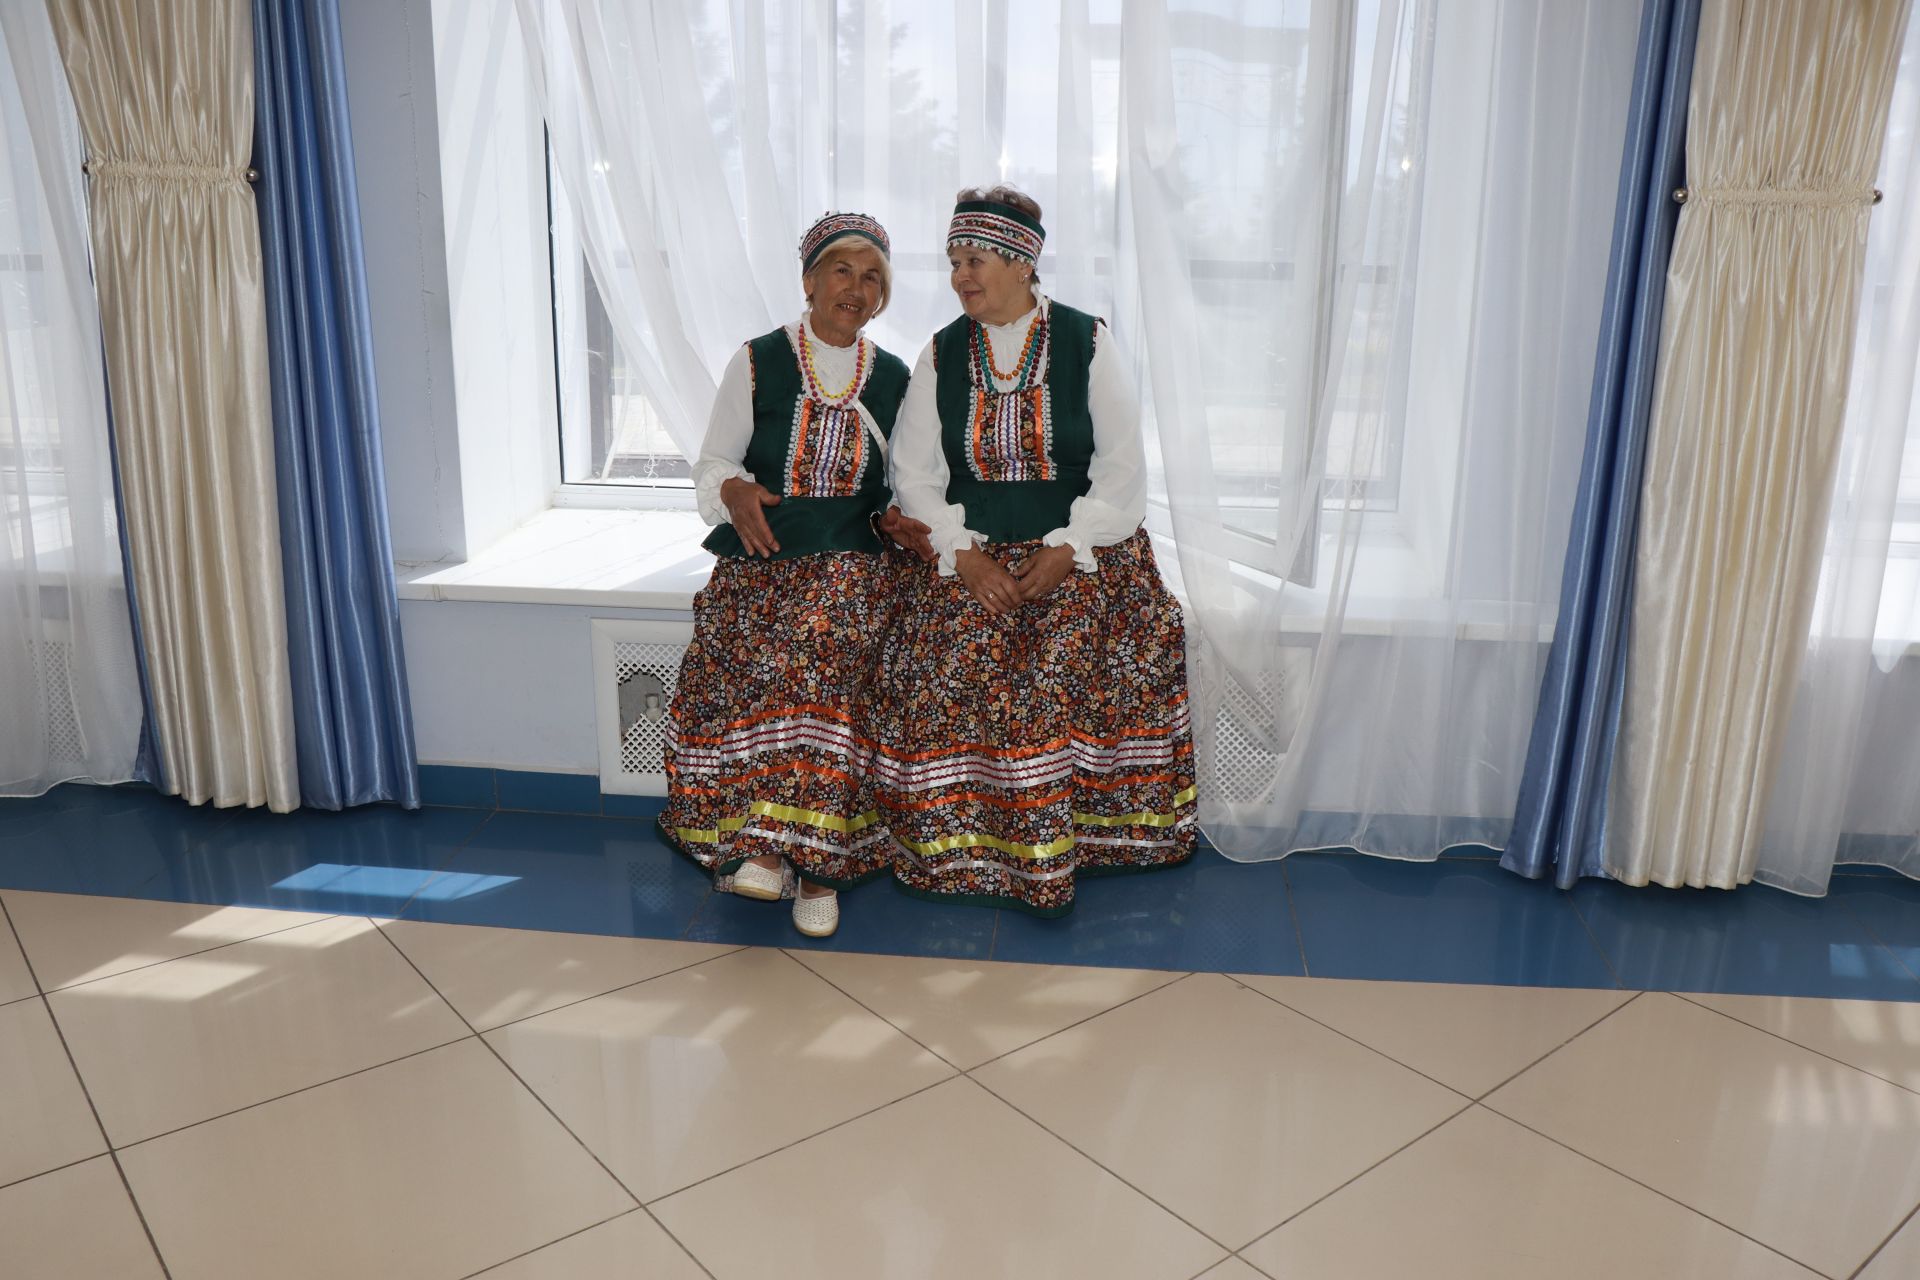 Клуб веселых и находчивых для людей с ограниченными возможностями по здоровью посвятили празднику «День России»